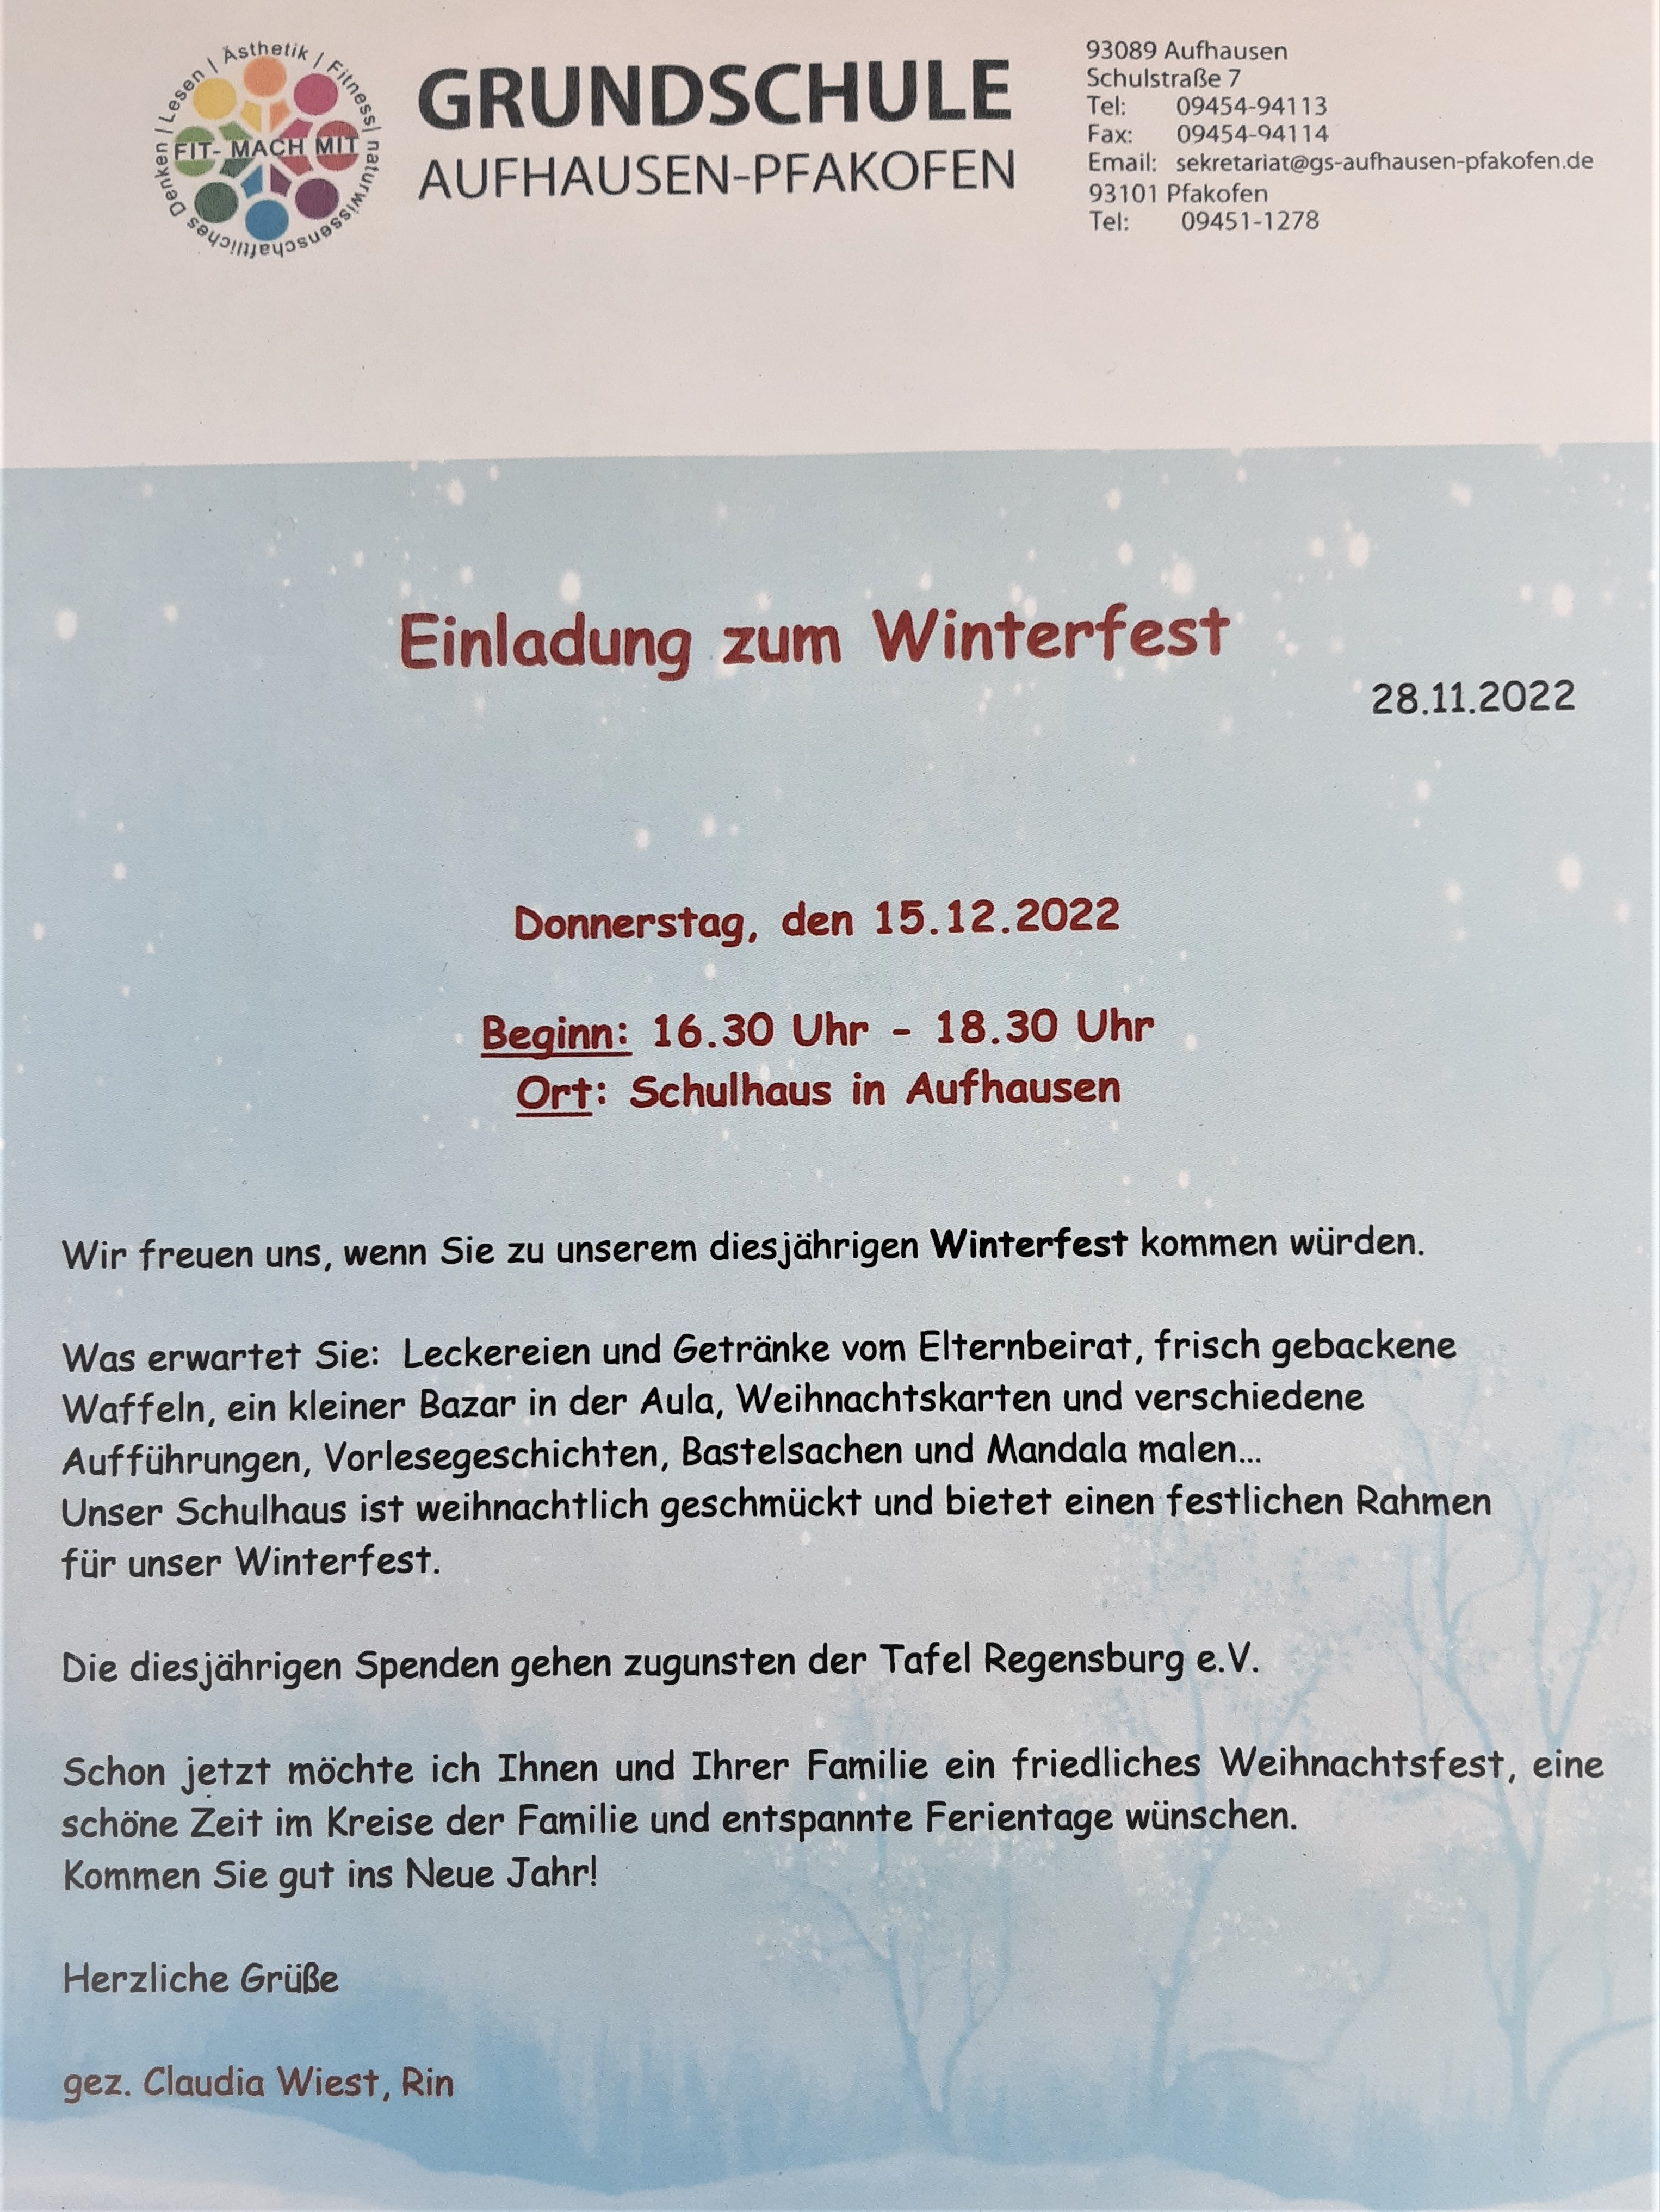 Einladung zum Winterfest